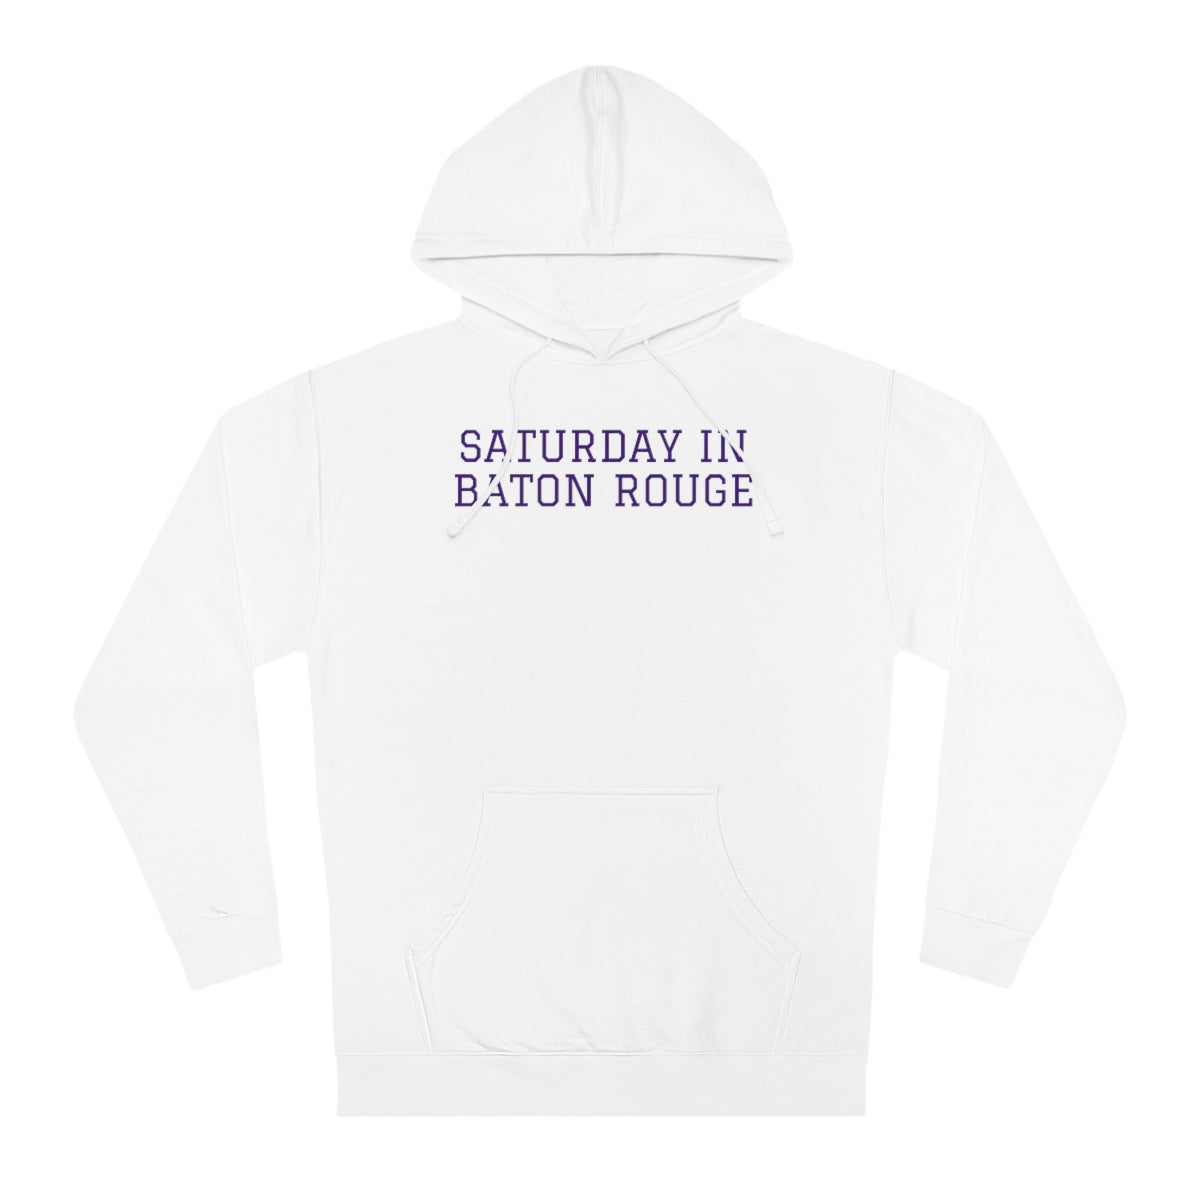 LSU Hooded Sweatshirt - GG - ITC